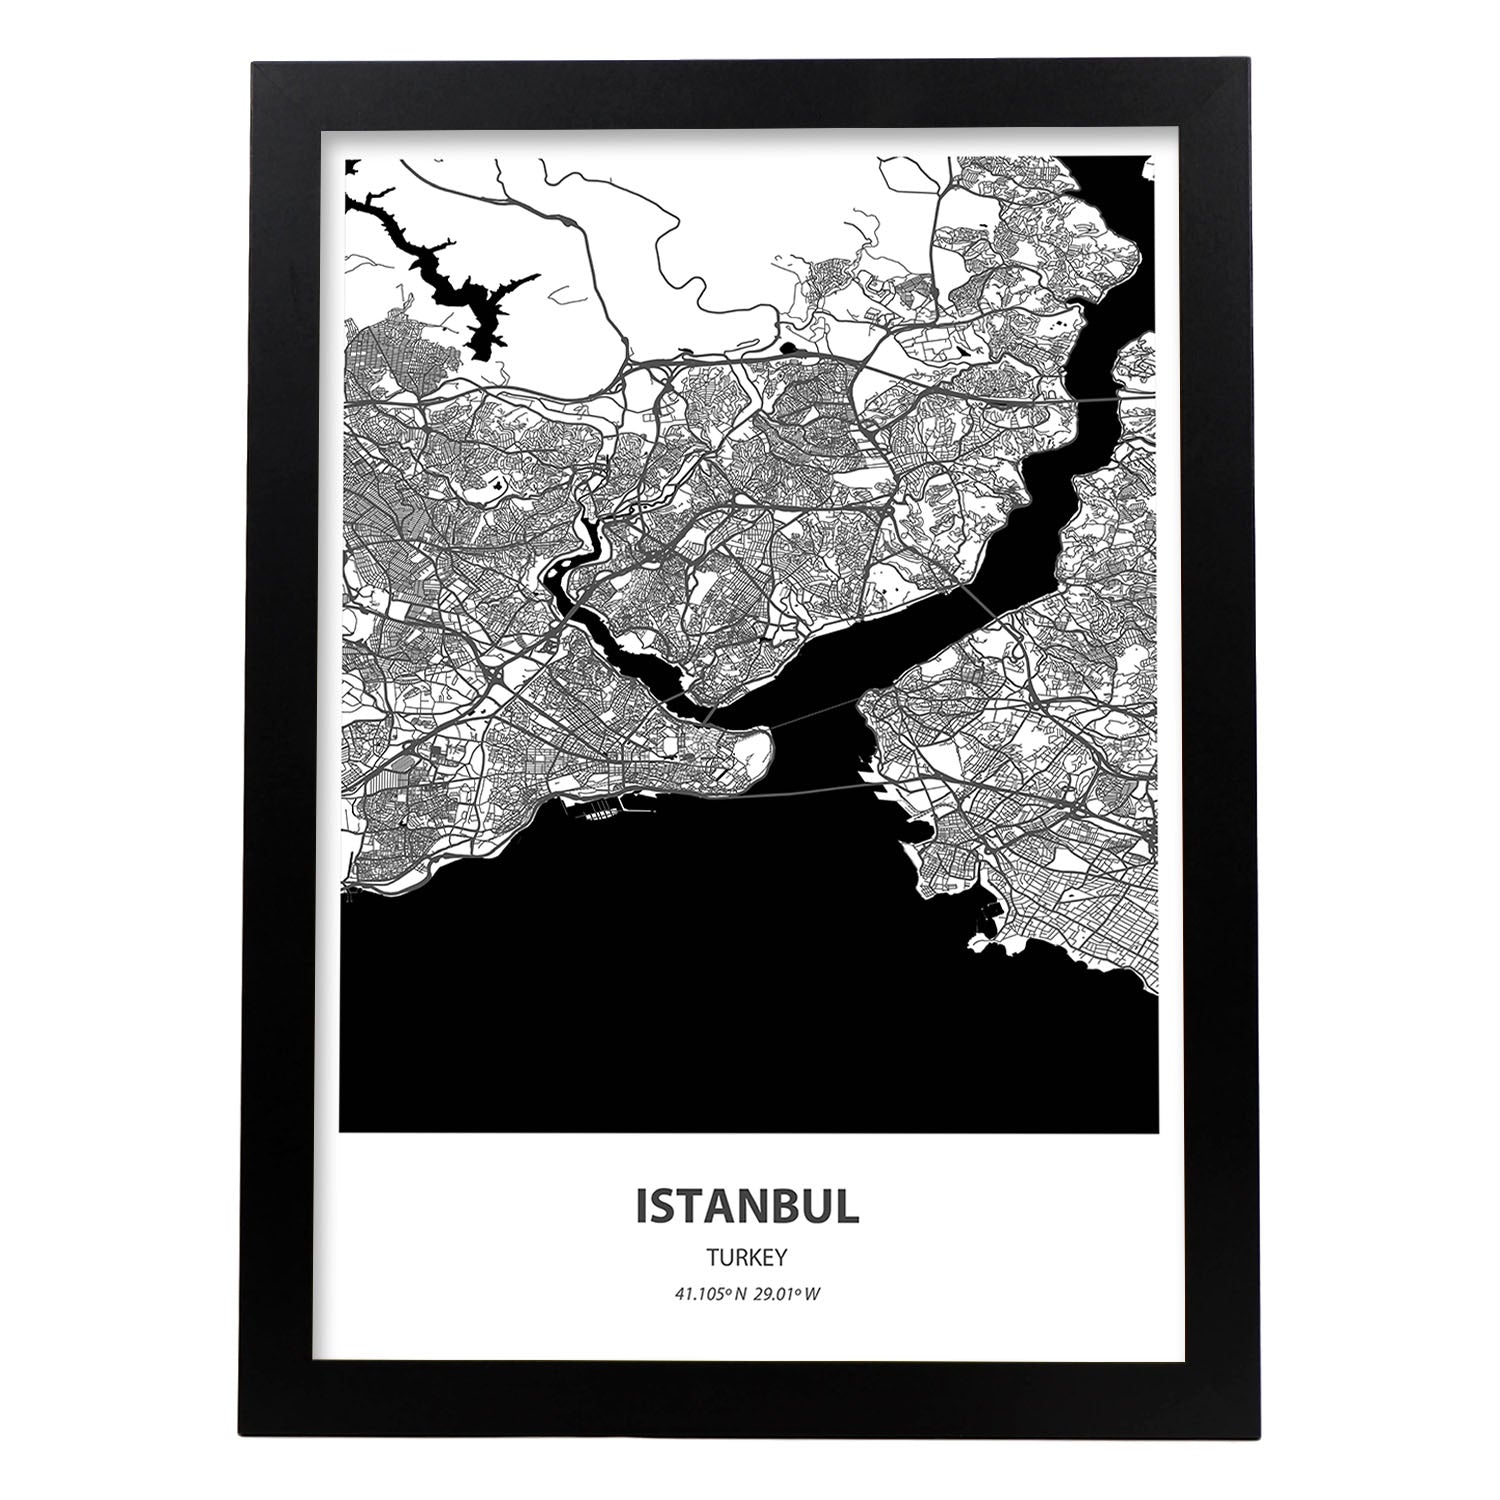 Poster con mapa de Istambul - Turkey. Láminas de ciudades de Oriente Medio con mares y ríos en color negro.-Artwork-Nacnic-A3-Marco Negro-Nacnic Estudio SL